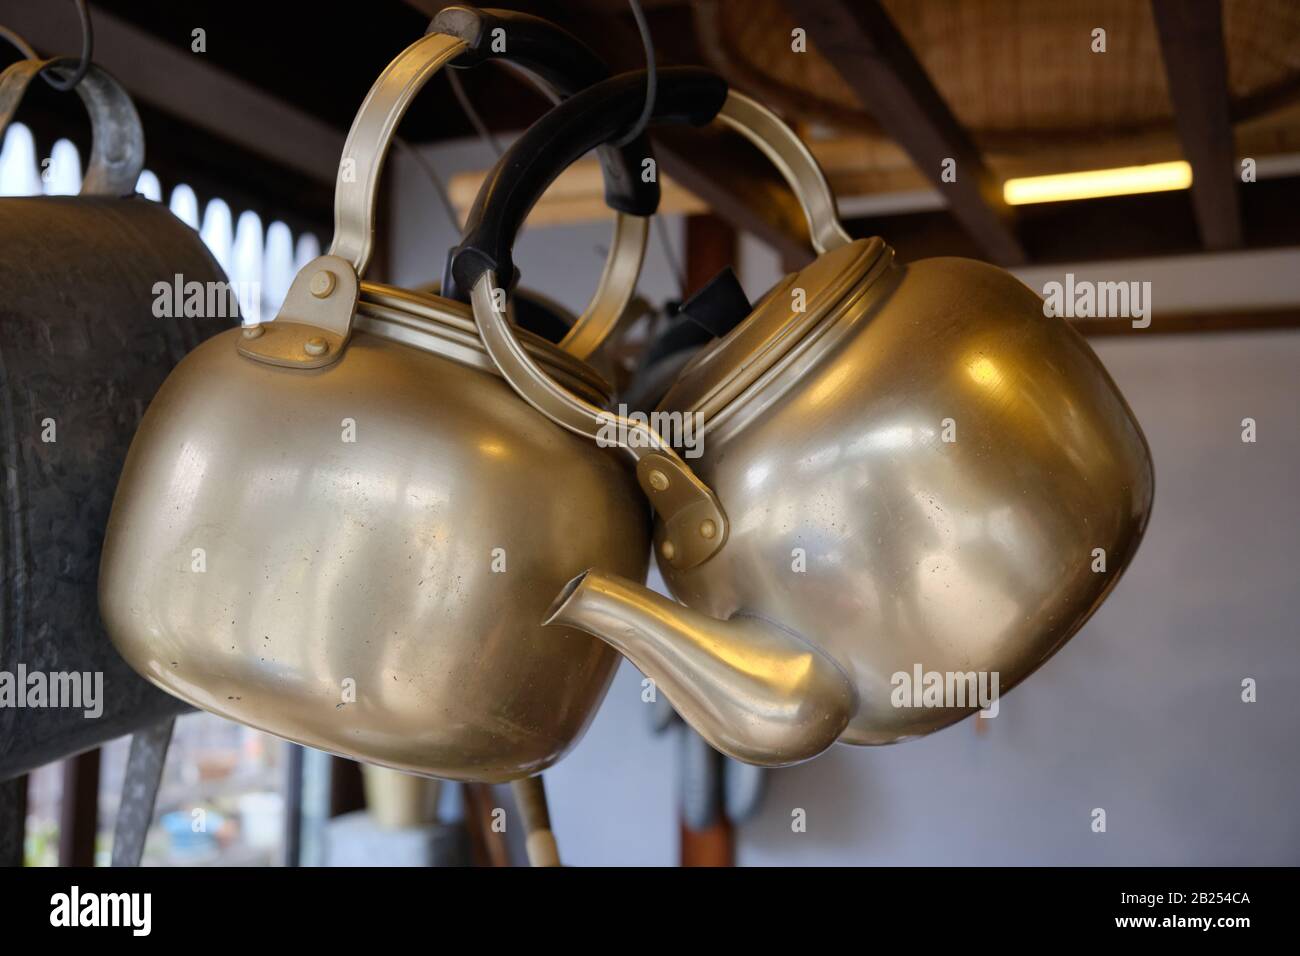 Teapots in ottone appesi in un negozio di ferramenta vecchio stile a Tokyo, Giappone. Foto Stock